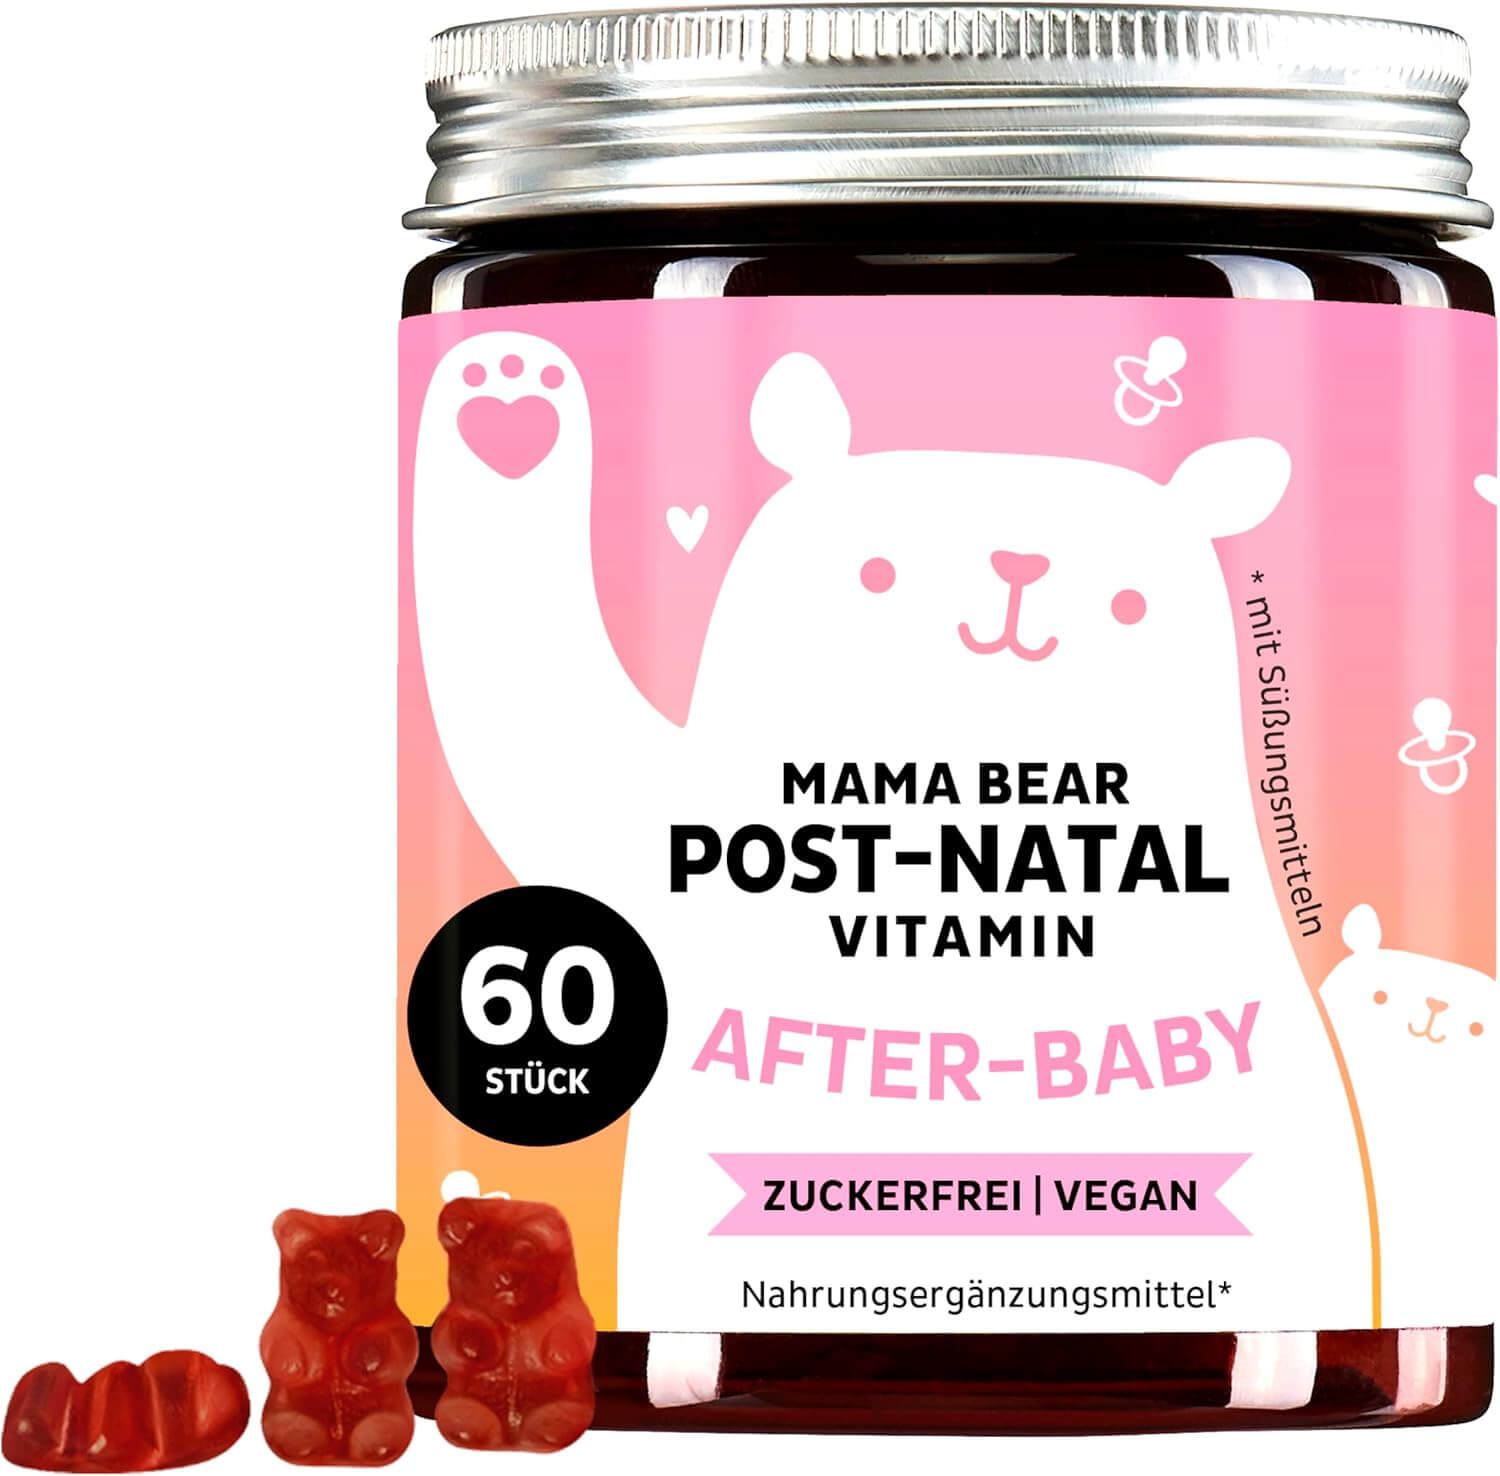 Bears with Benefits Mama Bear Post-Natal | 60 Stück | Vitamine für die Stillzeit | vegan | zuckerfrei